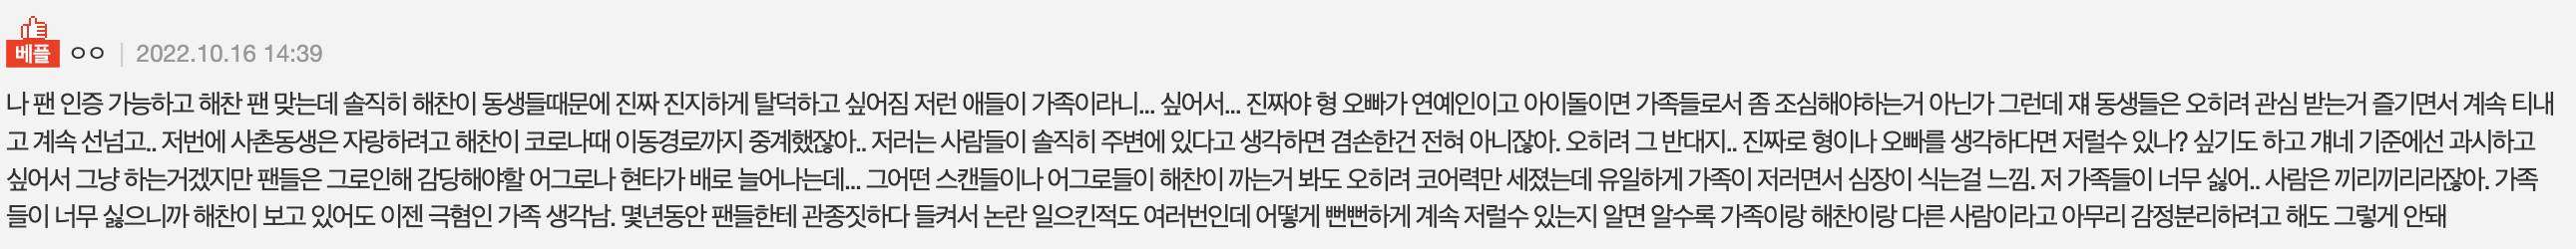 Sasaeng membeberkan alasan menyebarkan rekaman suara Haechan NCT